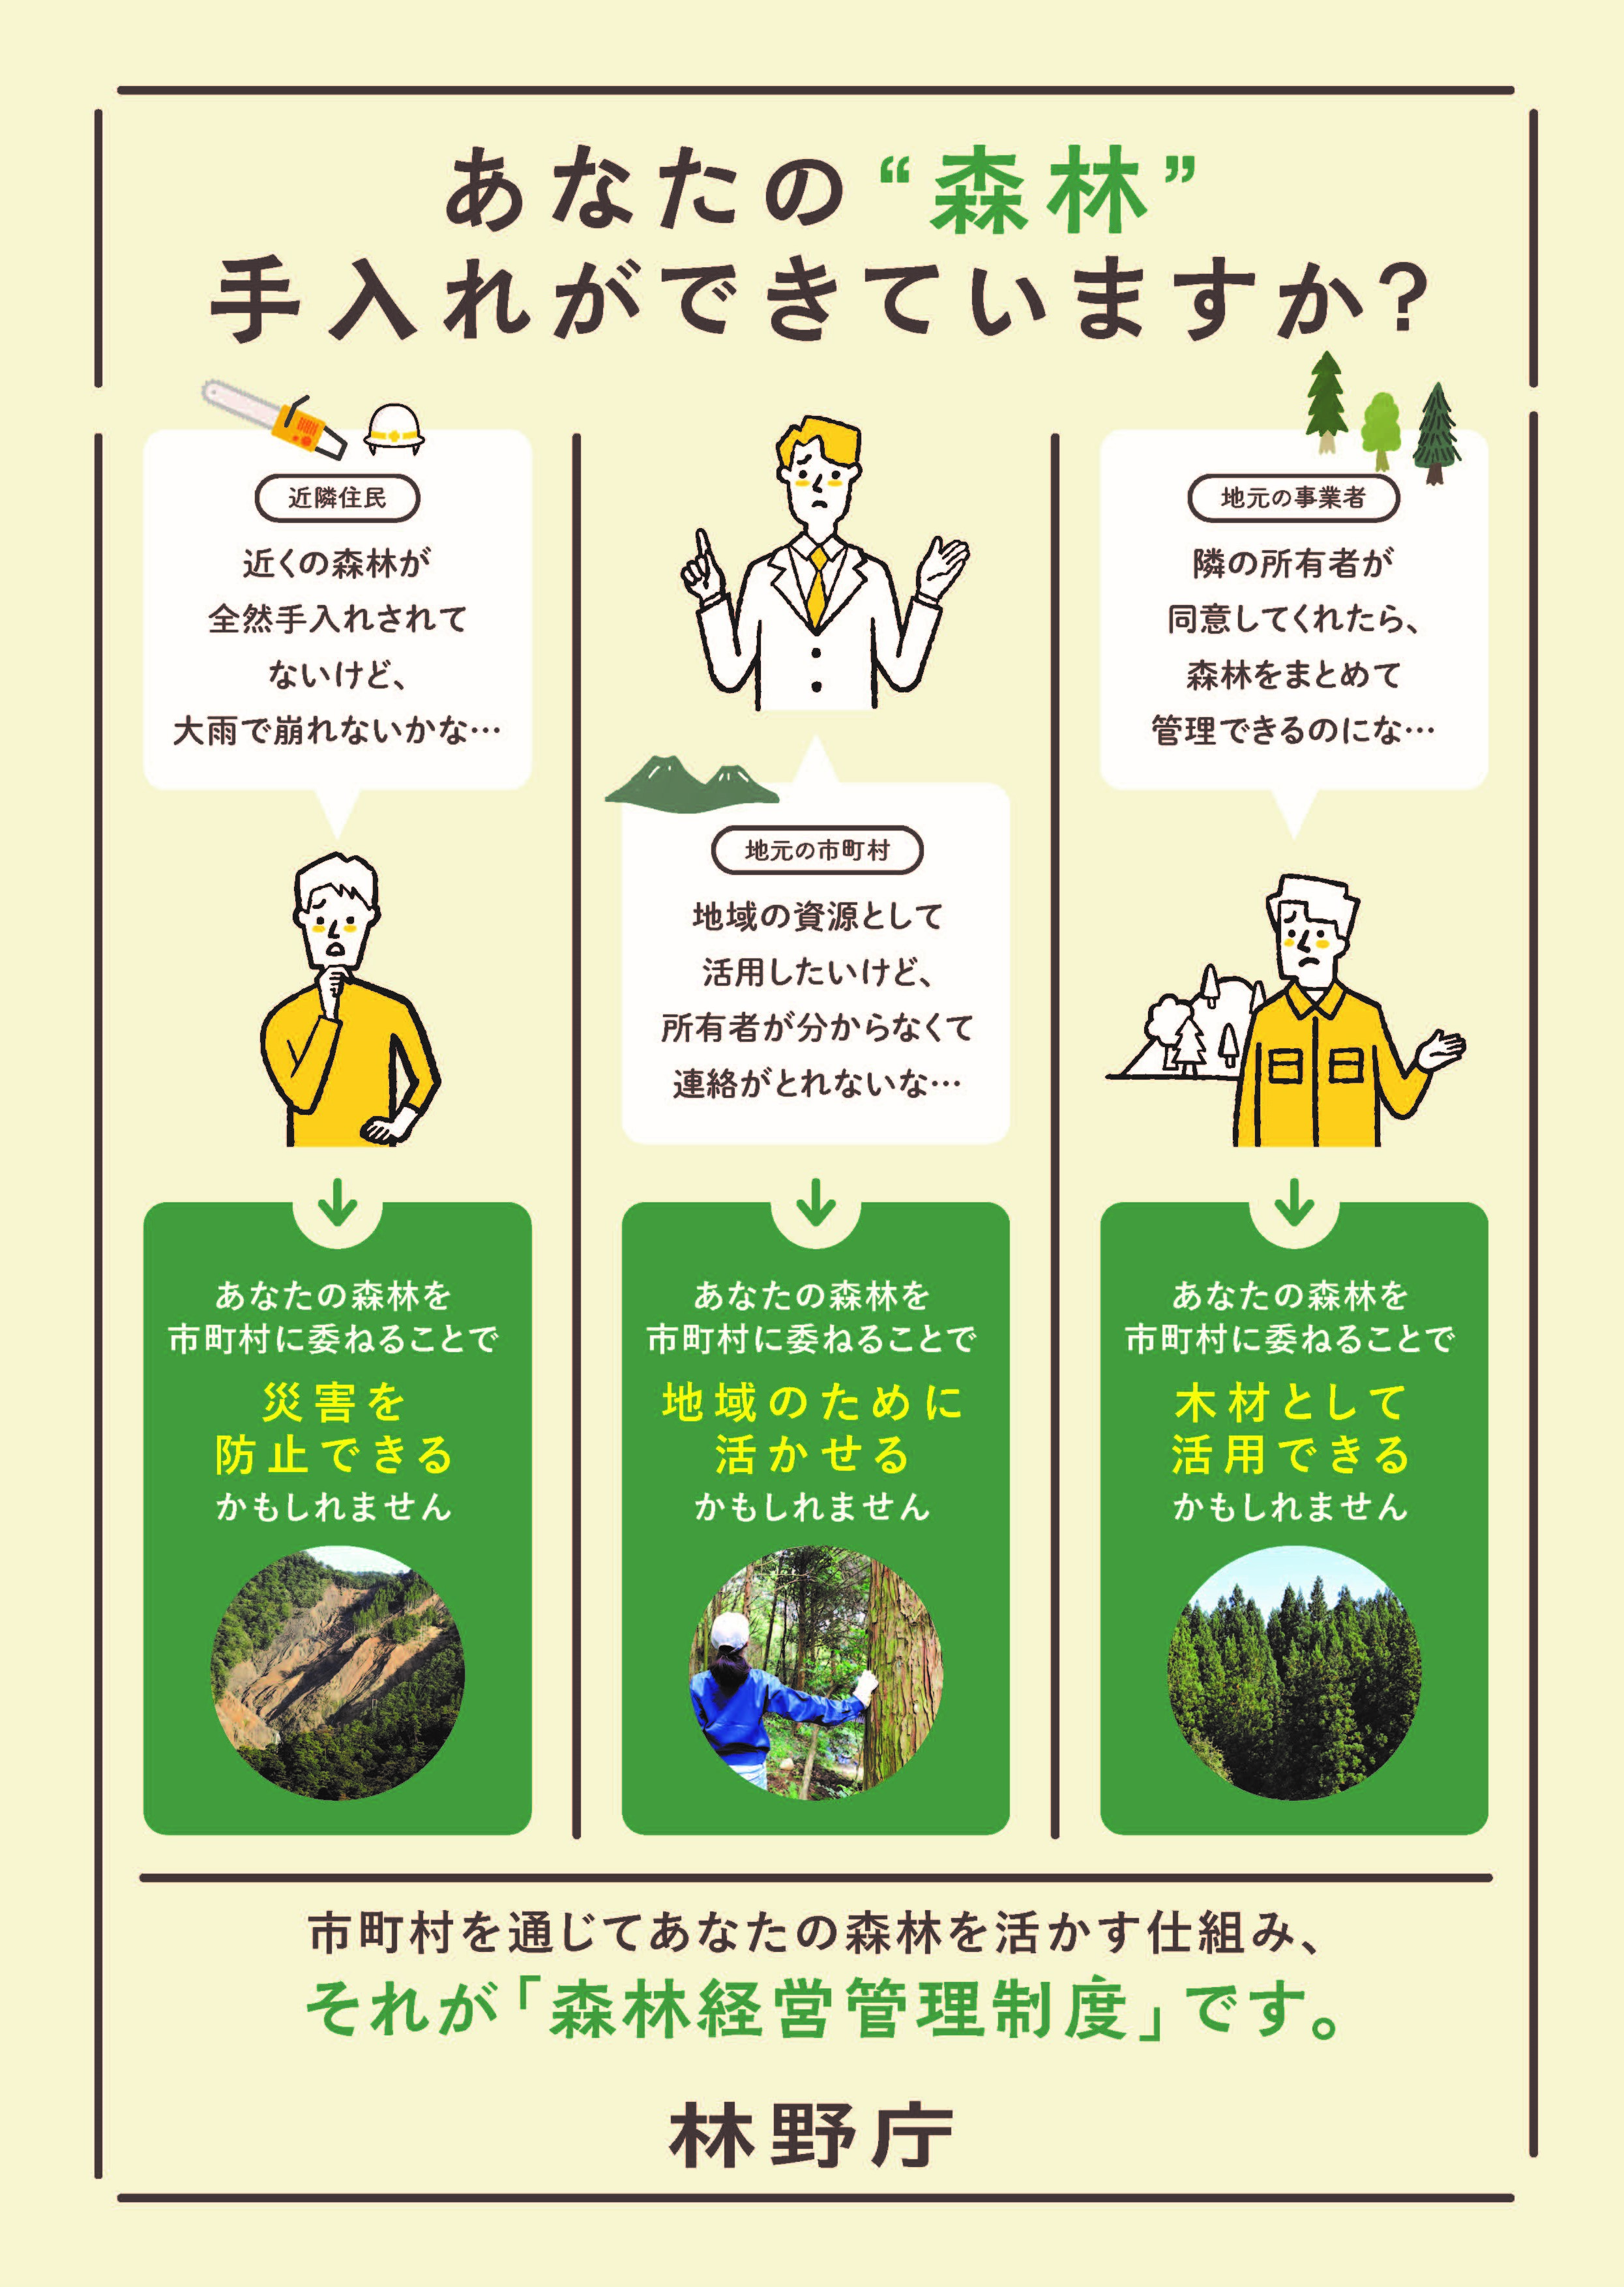 「森林経営管理制度に係る取組事例集Vol.3」を公表しました！